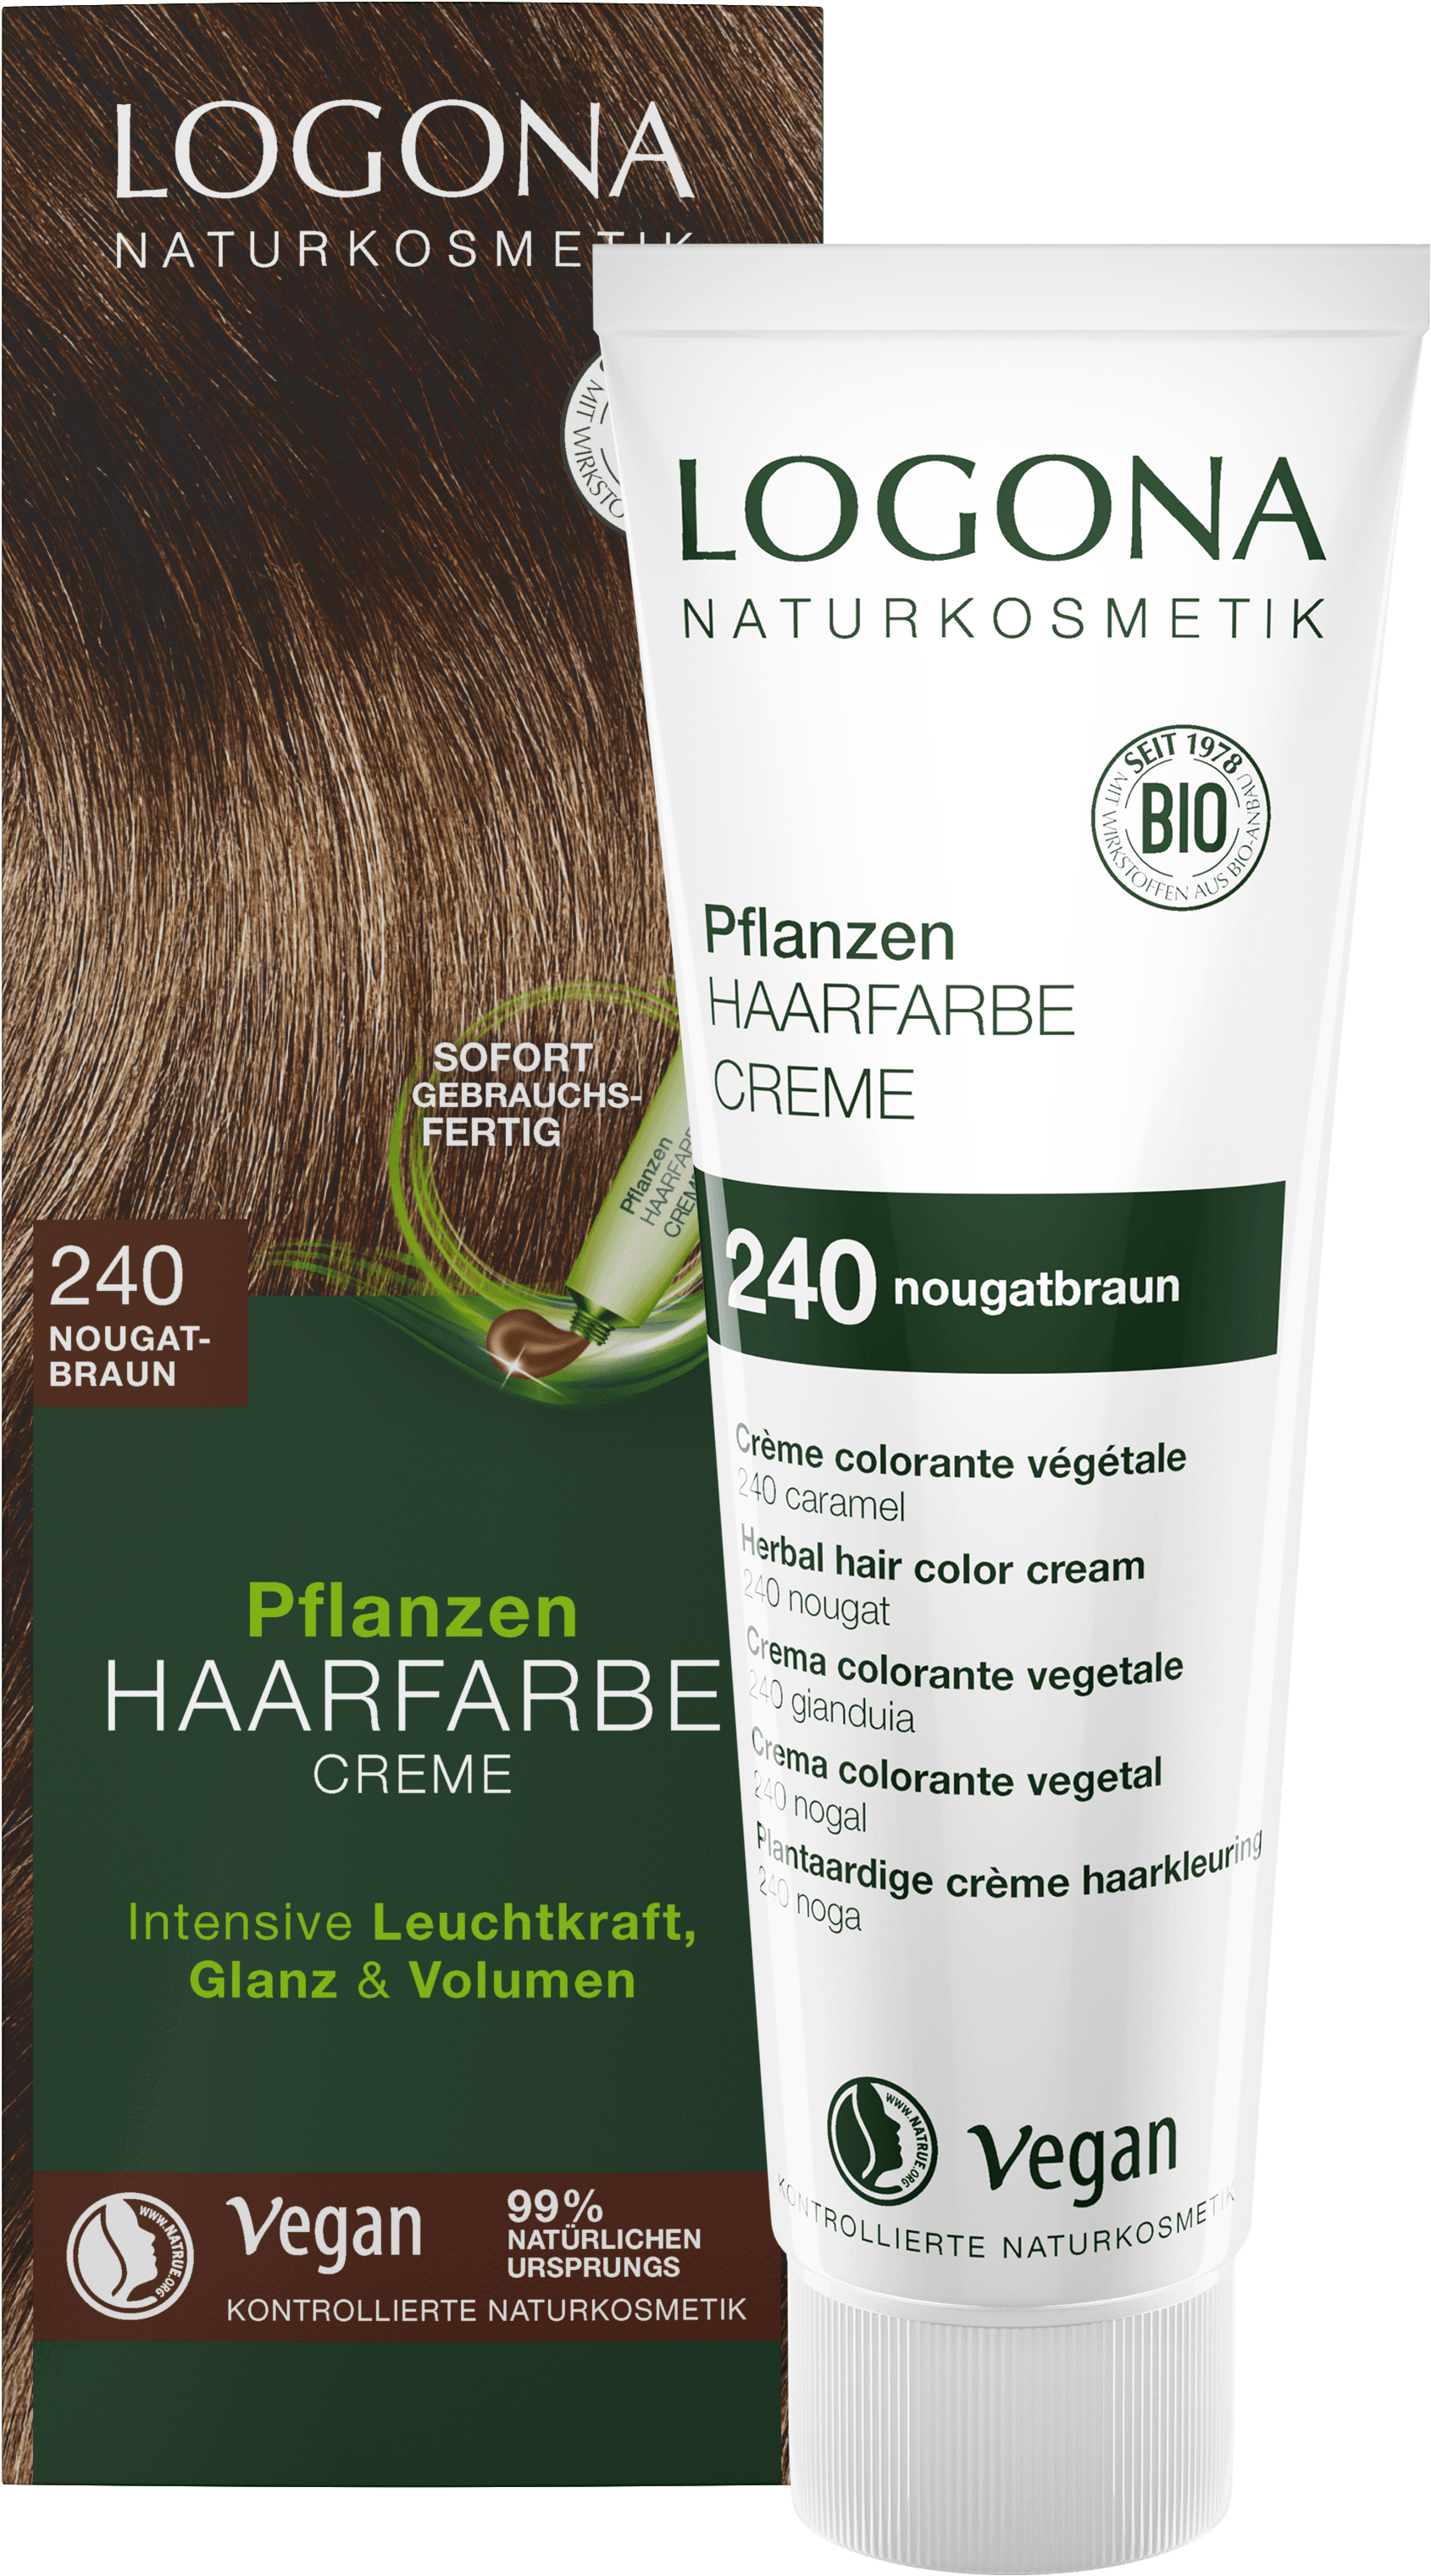 Pflanzen-Haarfarbe Creme 240 Nougatbraun LOGONA Naturkosmetik 